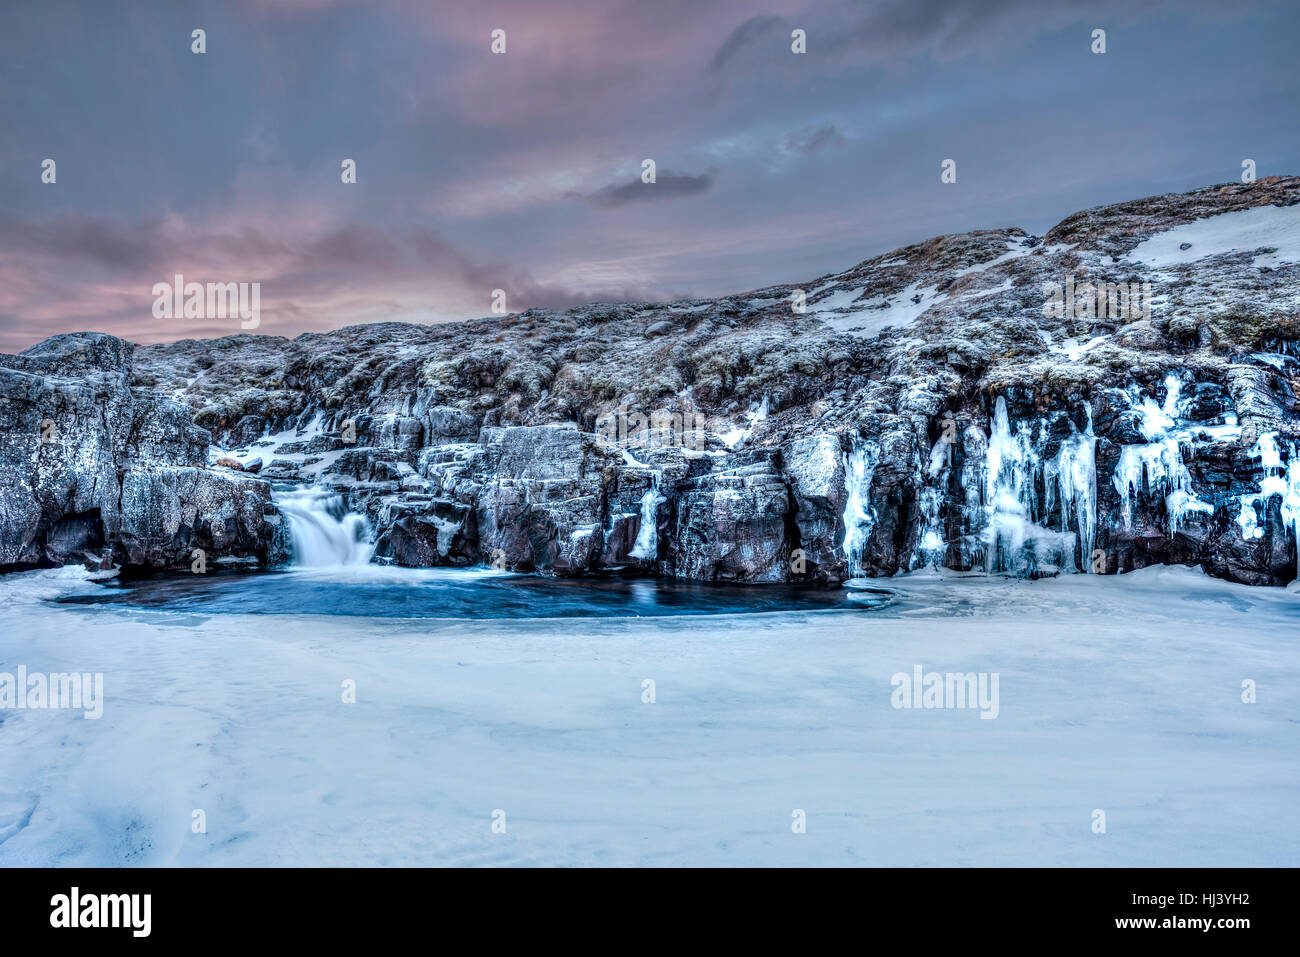 Une rivière gelée dans les hautes terres d'Islande encadrée par un ciel pastel foncé et le terrain accidenté offre des paysages pittoresques illustrant le désert gelé. Banque D'Images